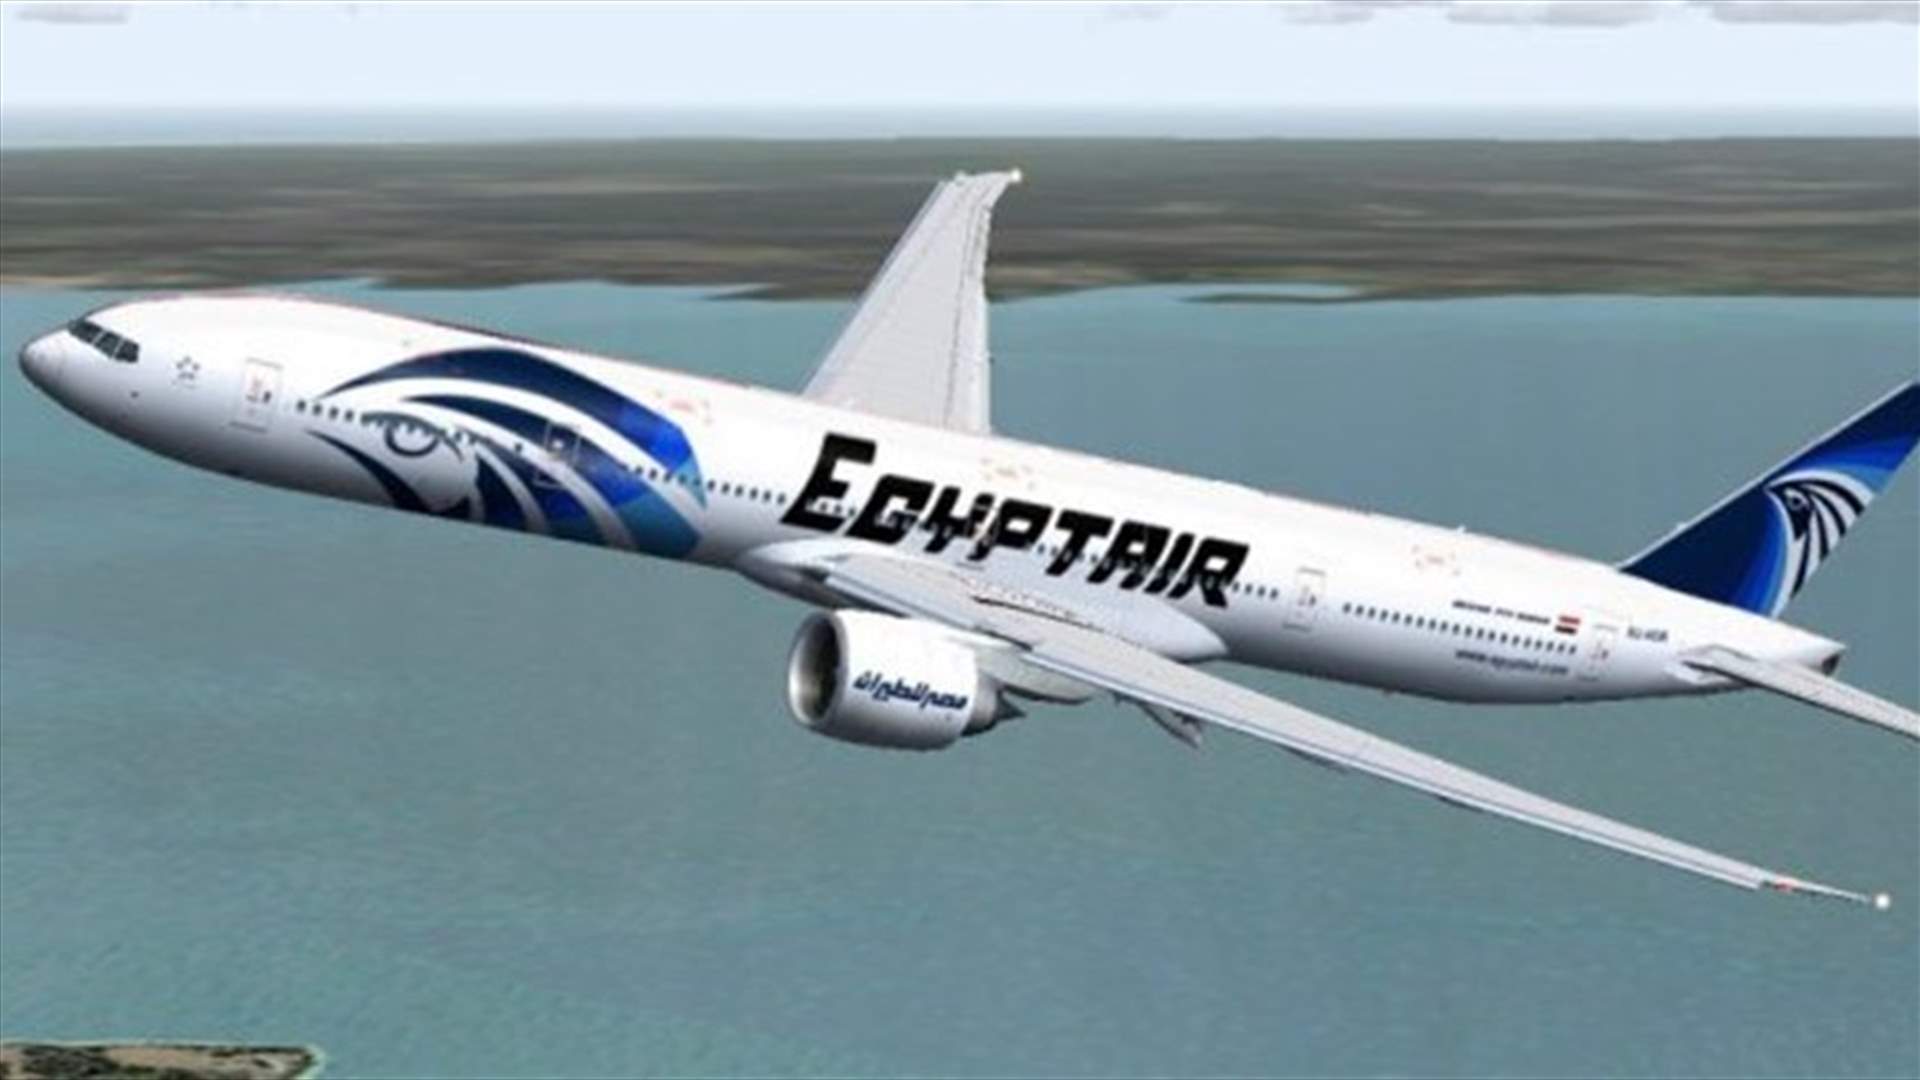 الصندوق الاسود للطائرة المصرية يؤكد تصاعد الدخان منها قبل التحطم